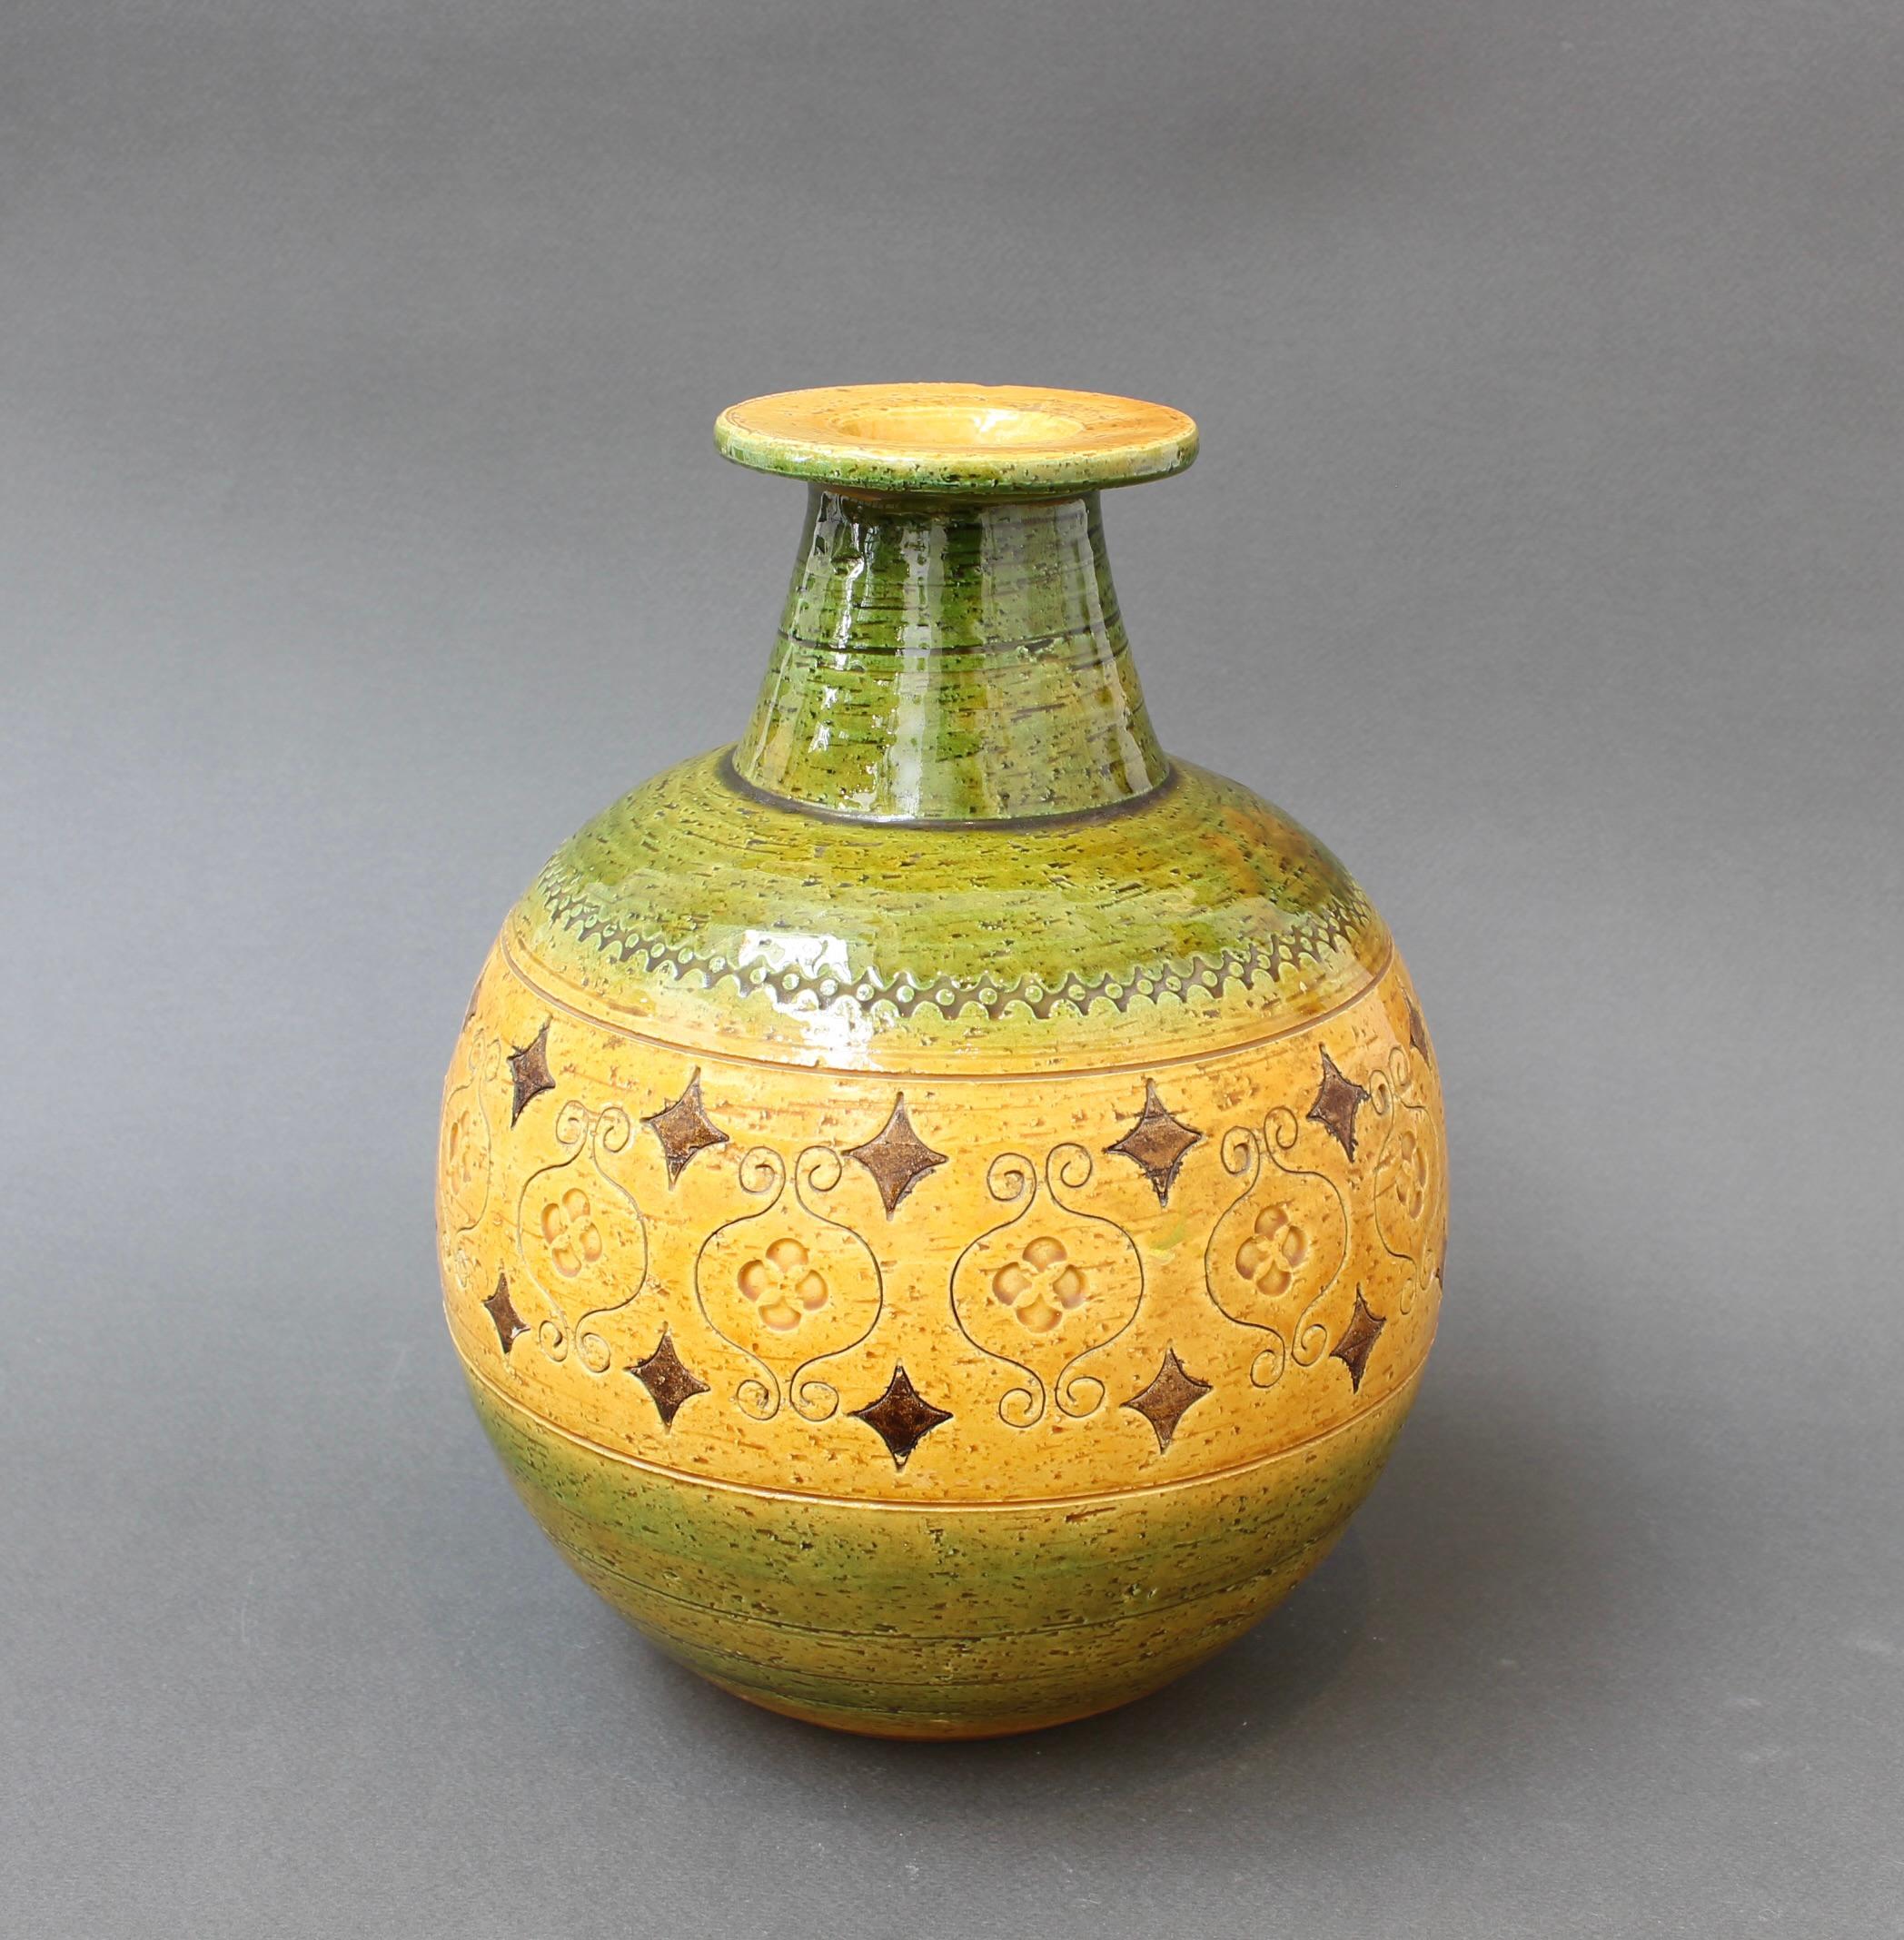 Italienische Keramikvase aus der Jahrhundertmitte von Aldo Londi für Bitossi (ca. 1960). Sie gehört zu der von Aldo Londi entworfenen Serie Arabesque